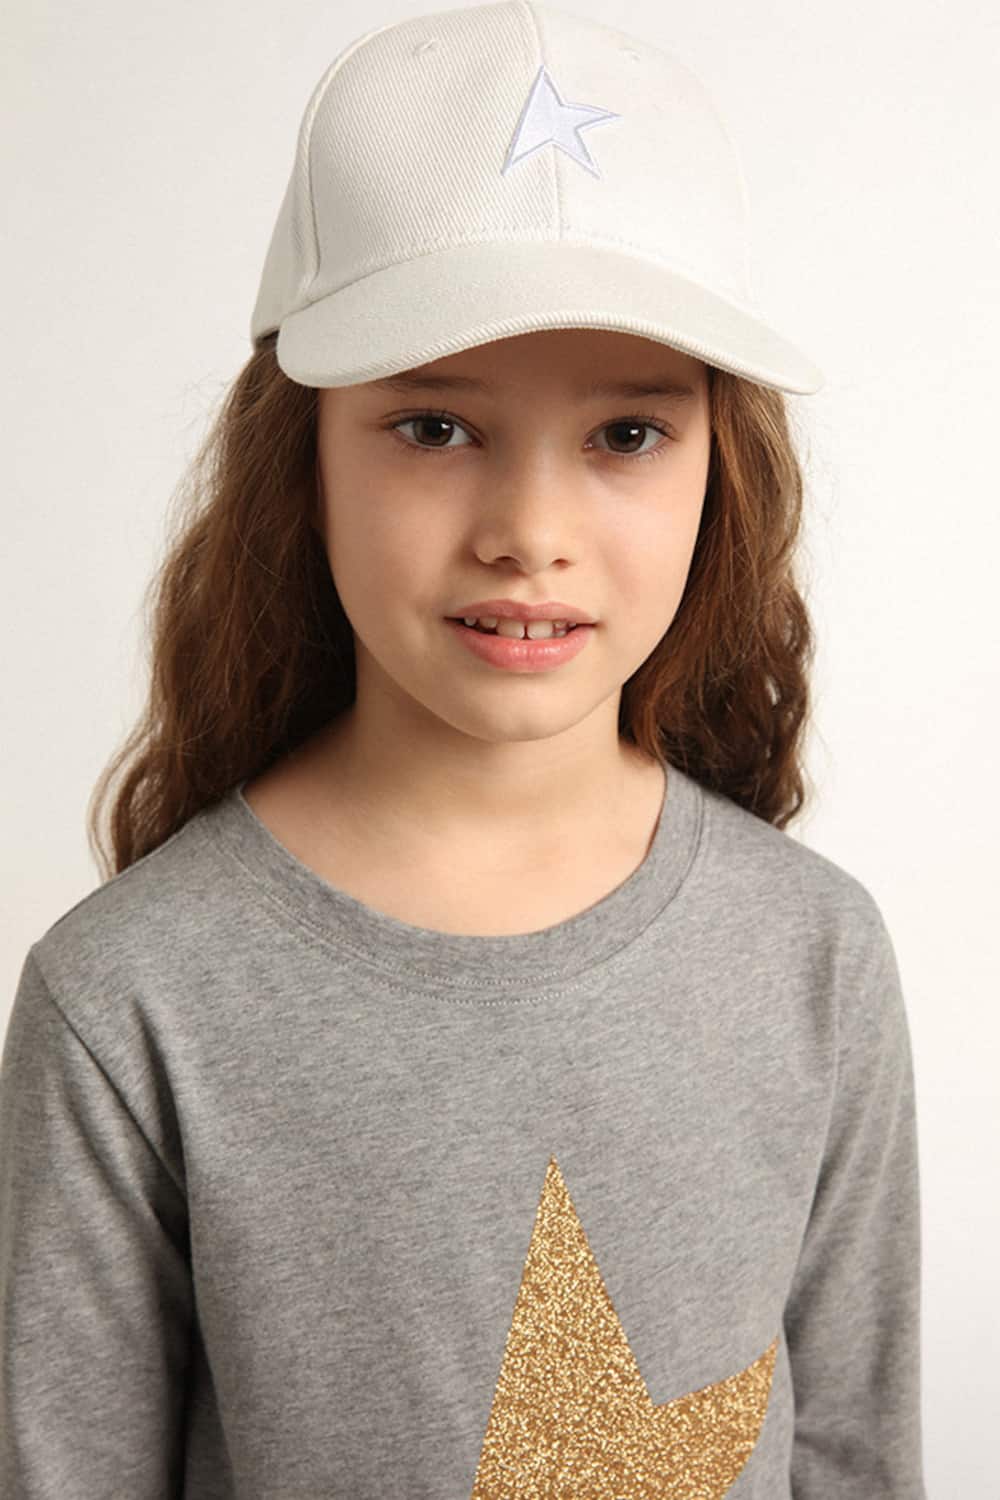 Golden Goose - Gorra de béisbol en color blanco de niño con estrella in 